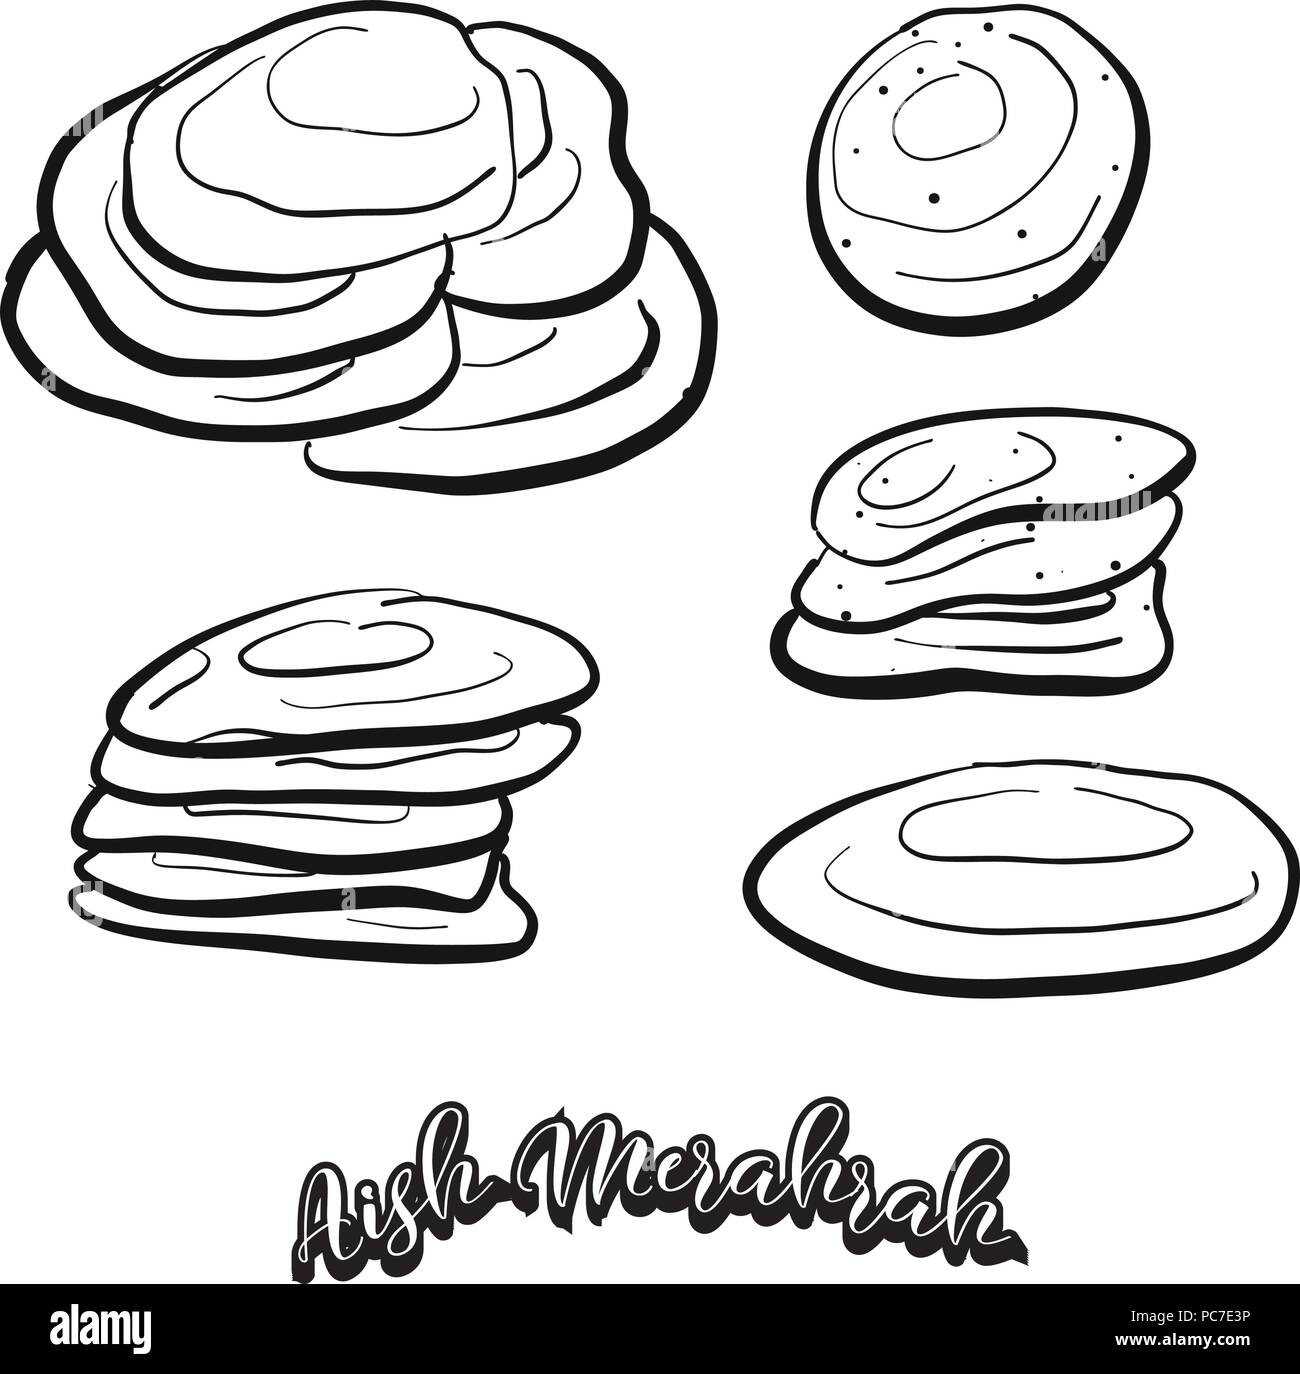 Croquis dessinés à la main, de l'alimentation. Merahrah Aish De dessin vectoriel, tous faits de nourriture, habituellement connues en Egypte. Illustration du pain series. Illustration de Vecteur